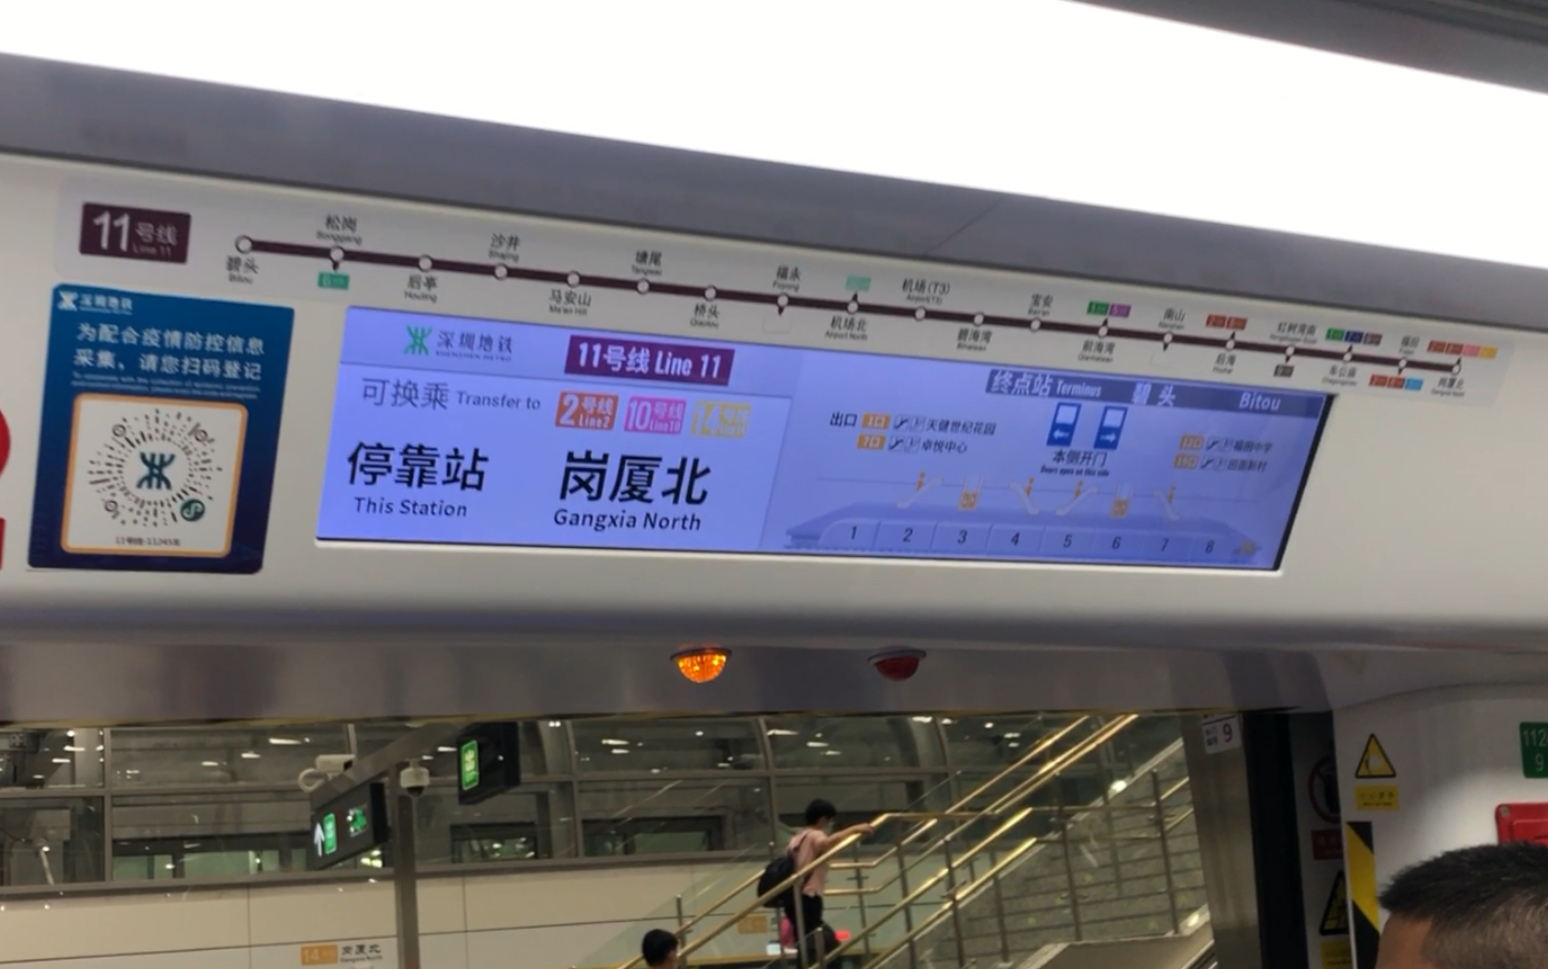 【深圳地铁】11号线中车株机1124车运行于岗厦北